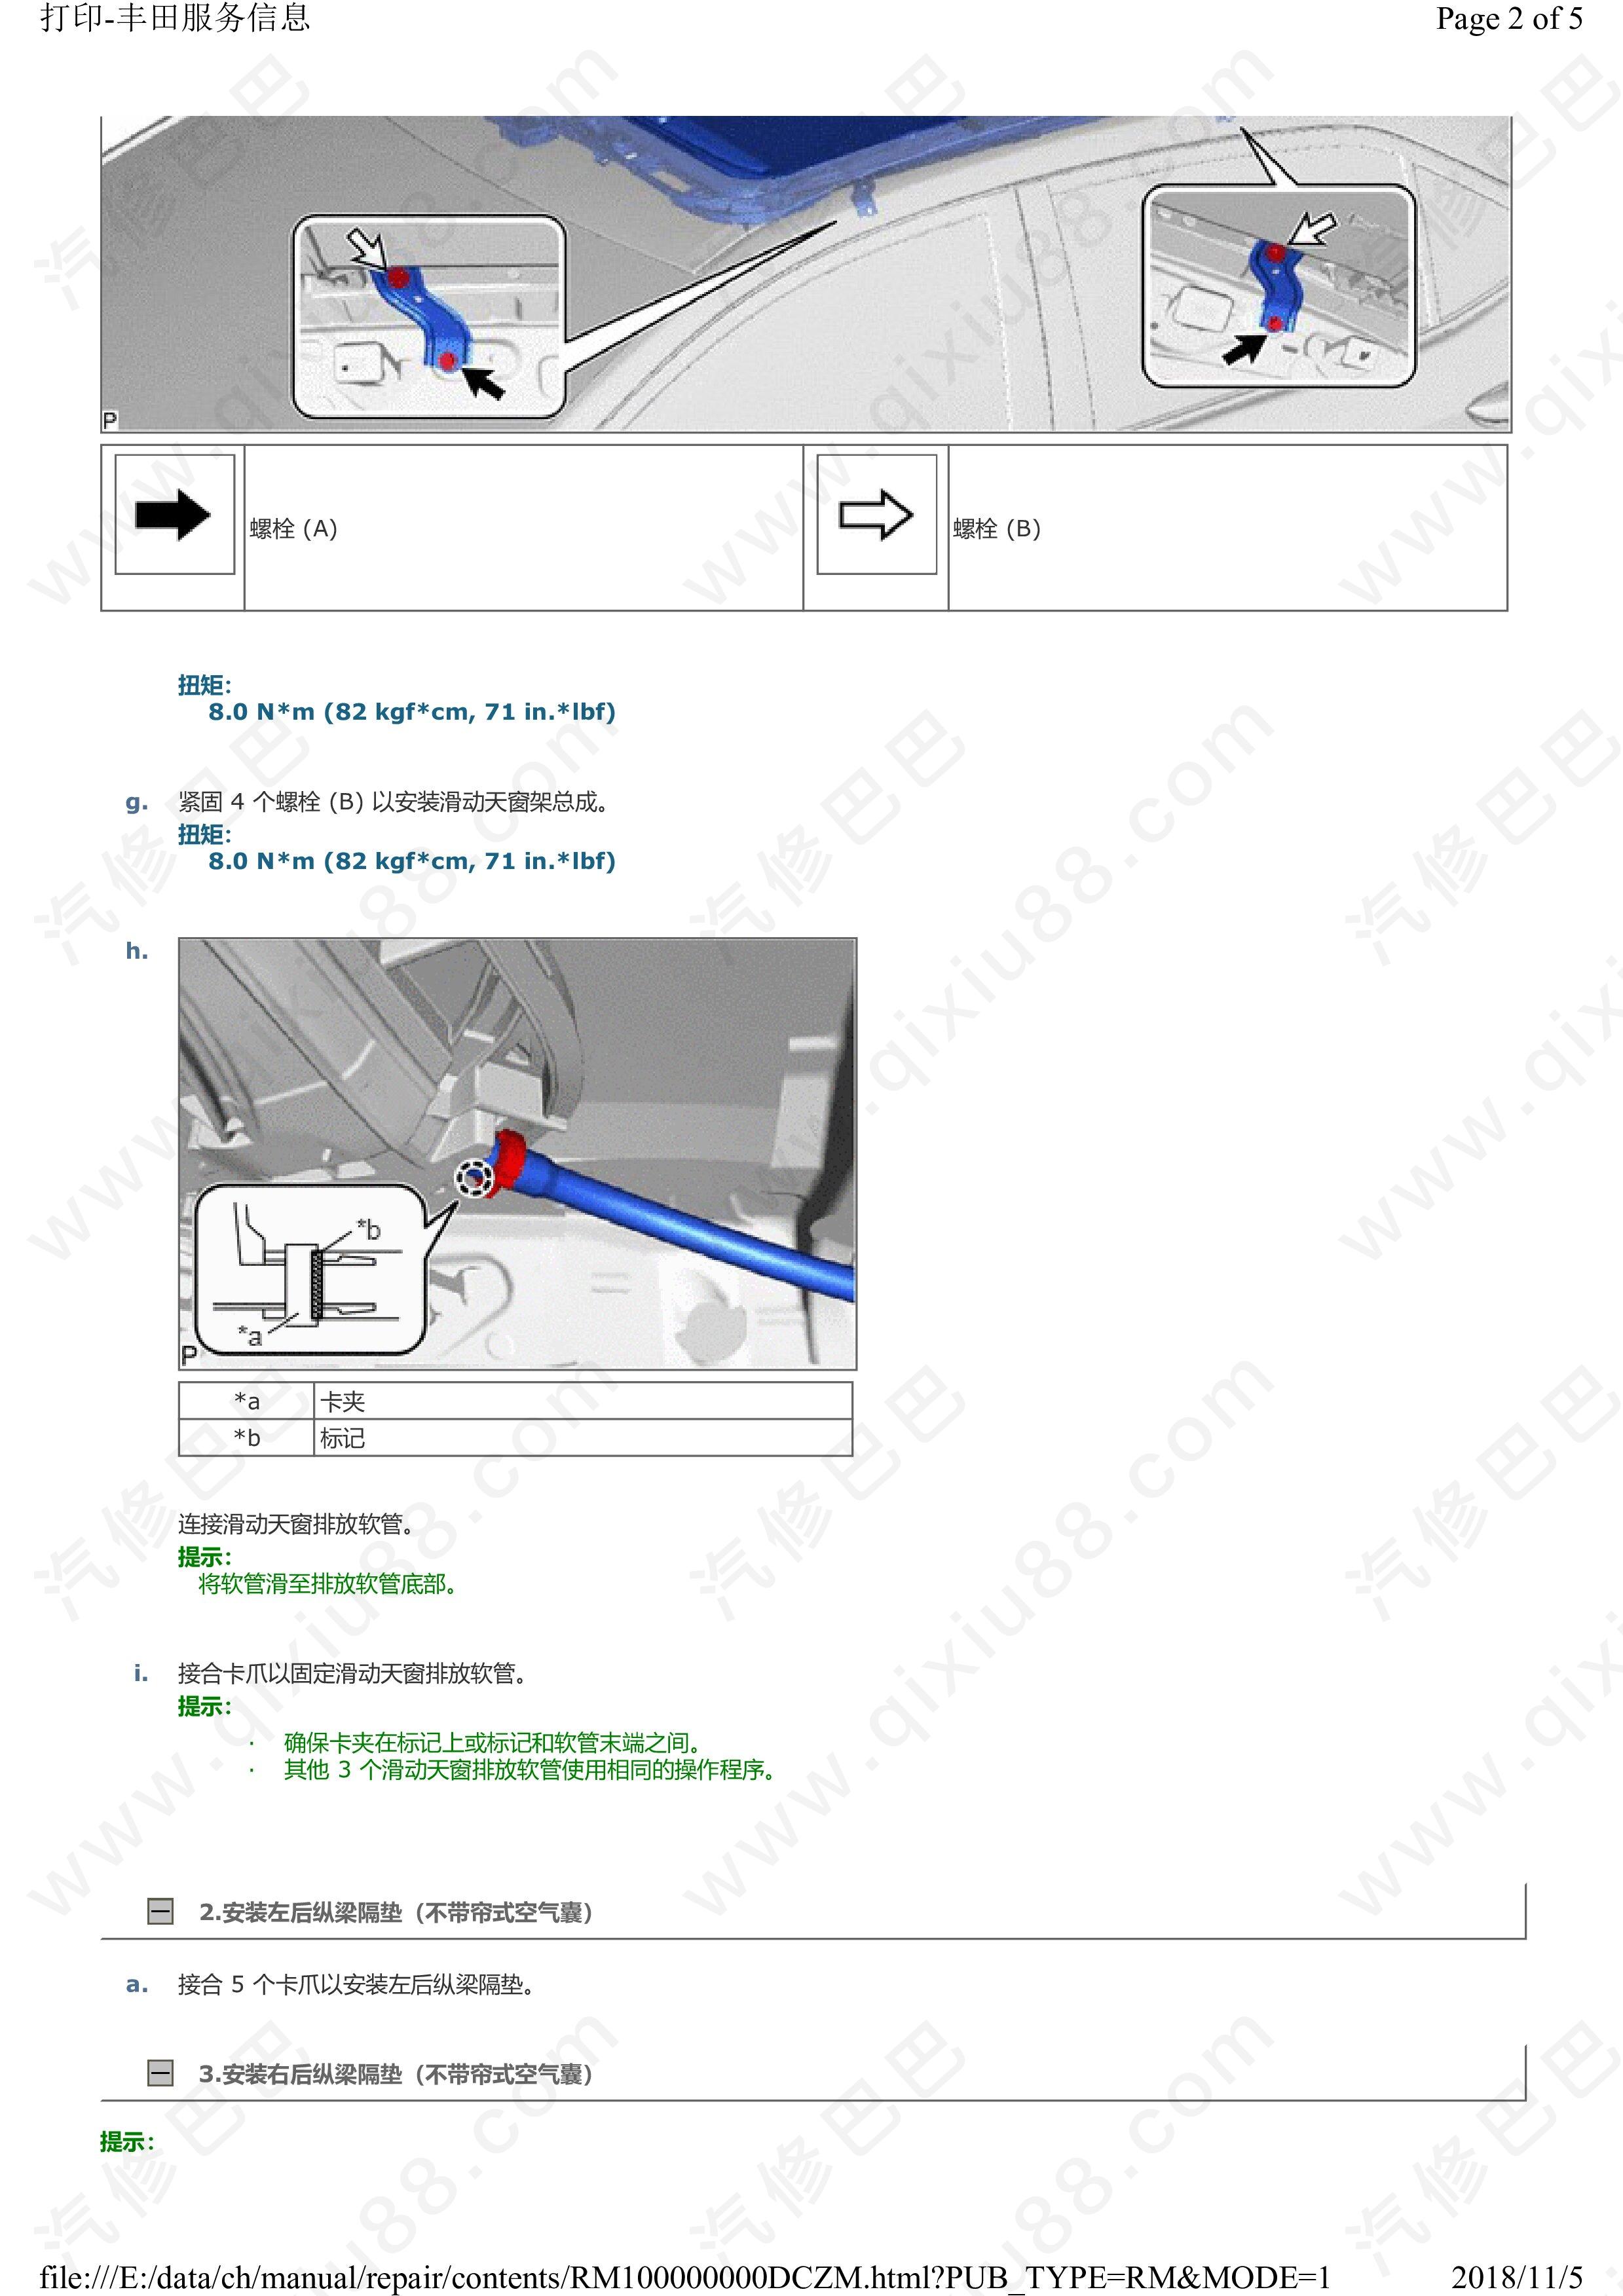 丰田卡罗拉滑动天窗系统 活顶维修手册和线路图